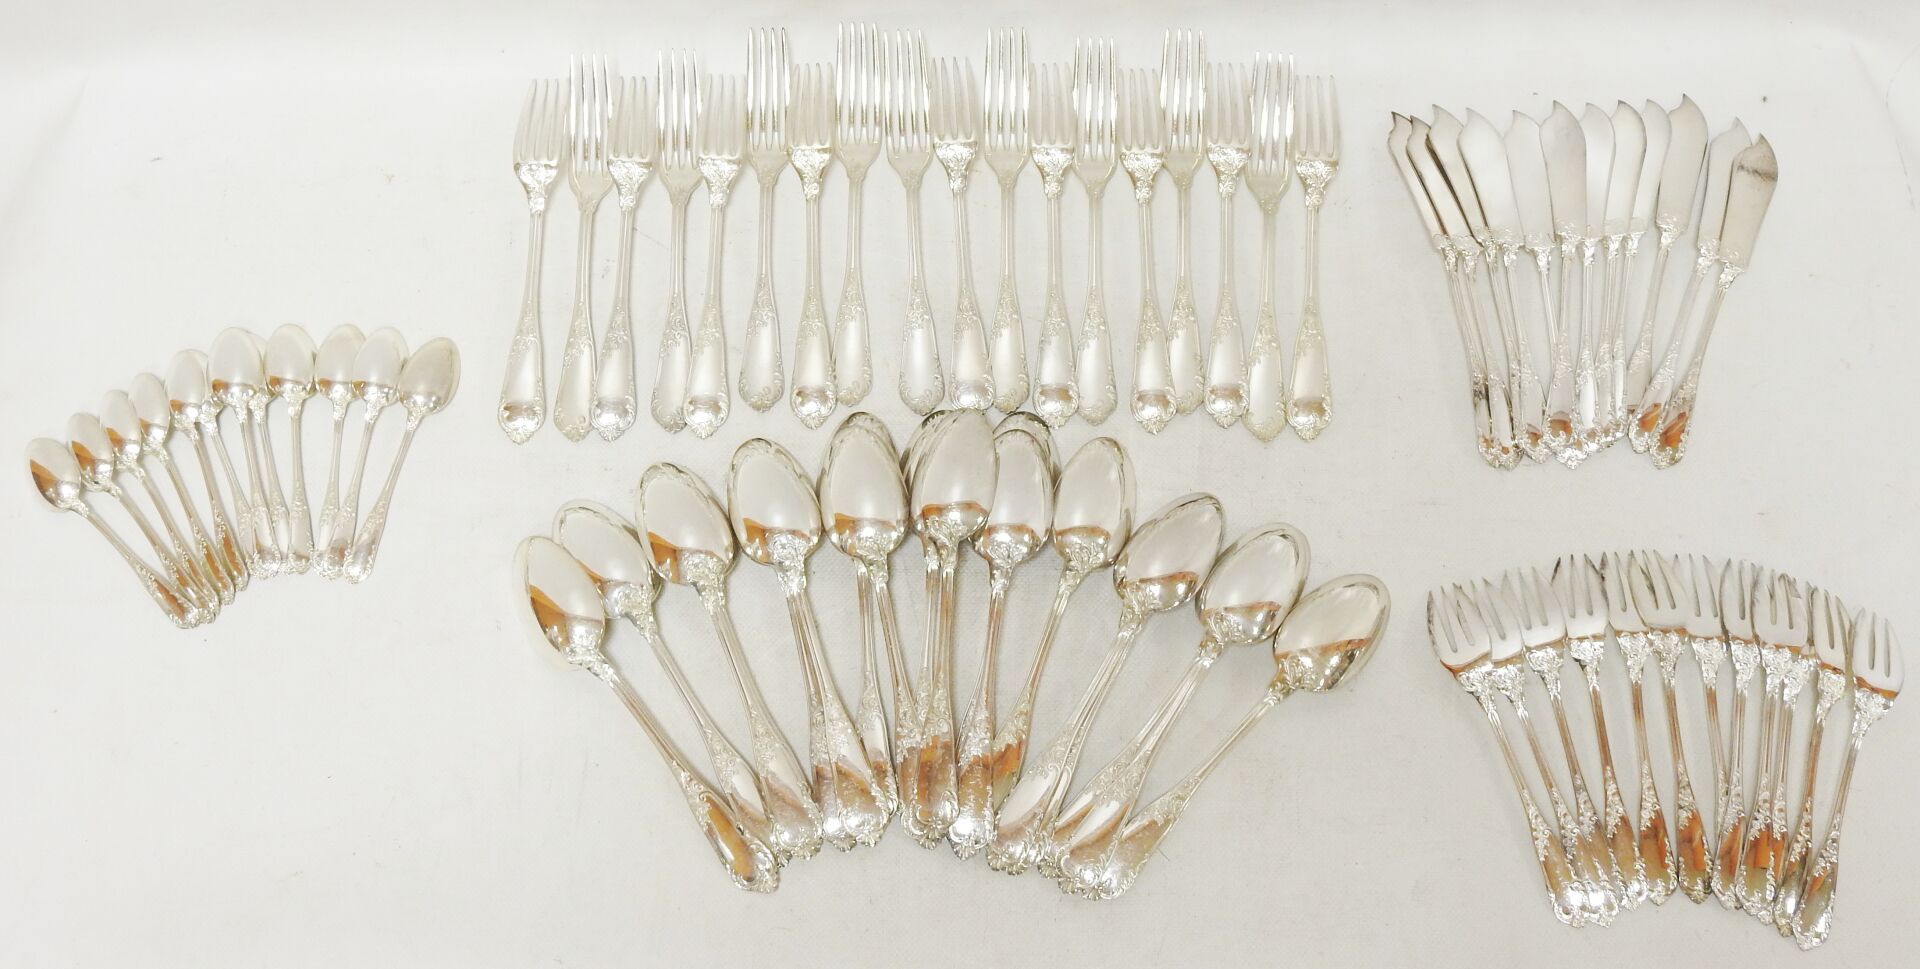 Null 一个Minerva银质晚餐服务，带有罗盖尔装饰，包括:十二个鱼形餐具，十二个甜点勺子和十二个大型餐具。

总重量：4900克。

磨损和撕裂。